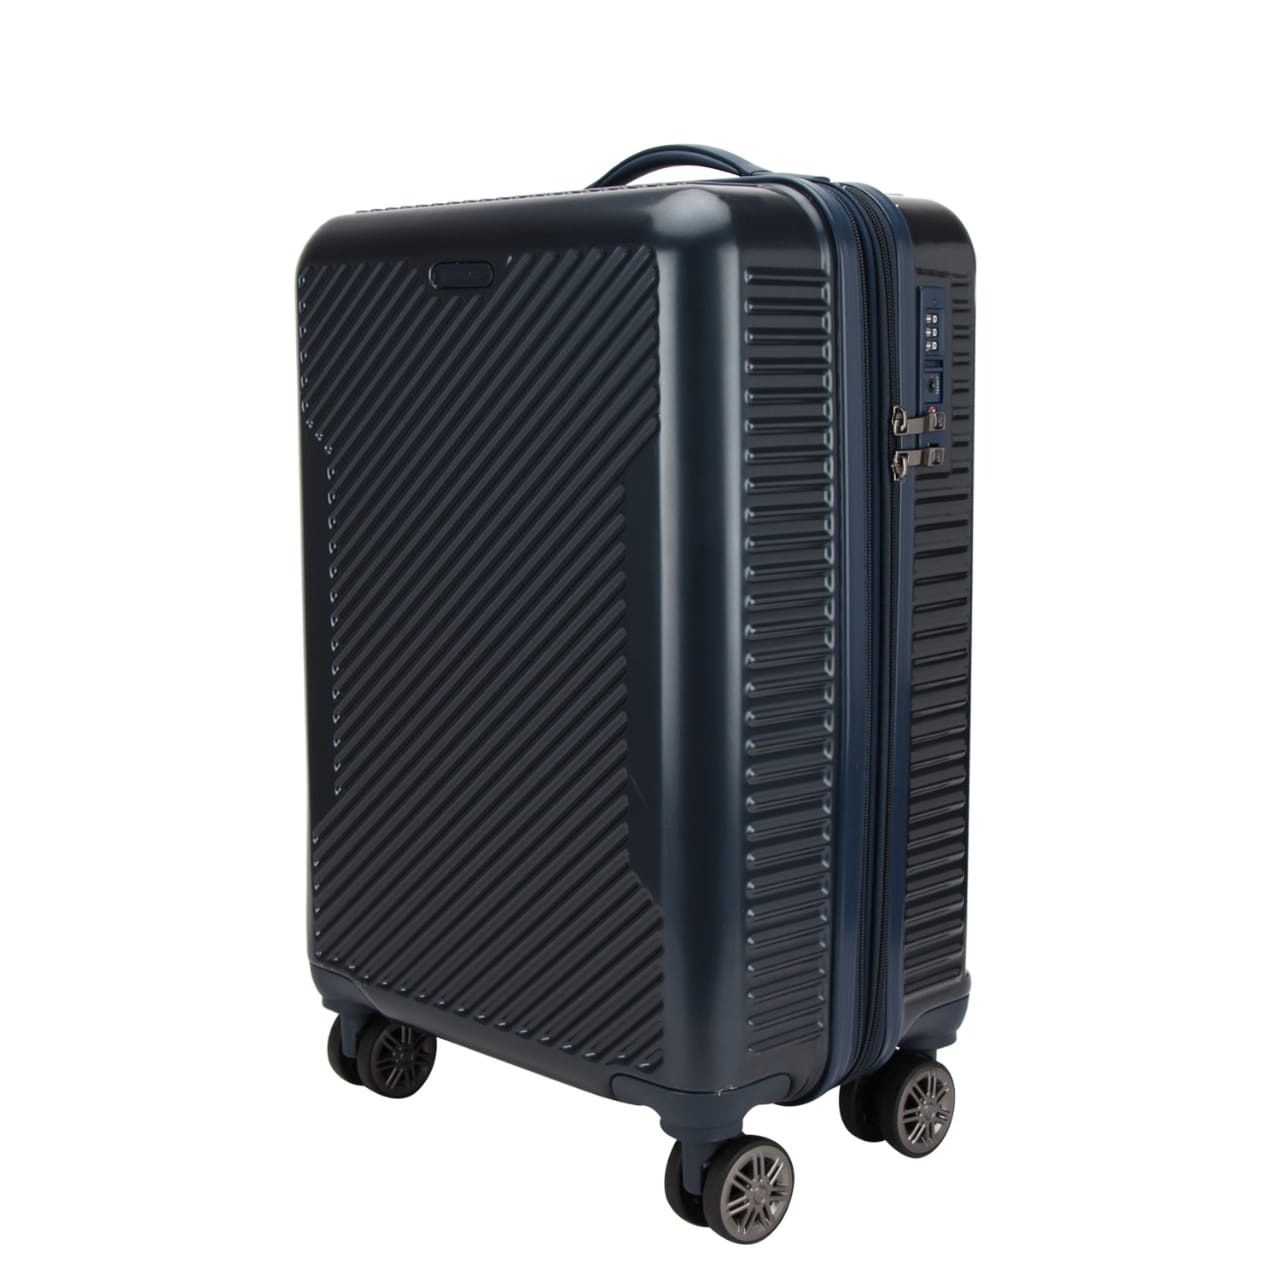 Traworld Estella Tourister Expandable Suitcase, Soft Sided Luggage,  Travel|International|Tourist Bag (Orange) Expandable Cabin Suitcase - 20  inch Orange - Price in India | Flipkart.com